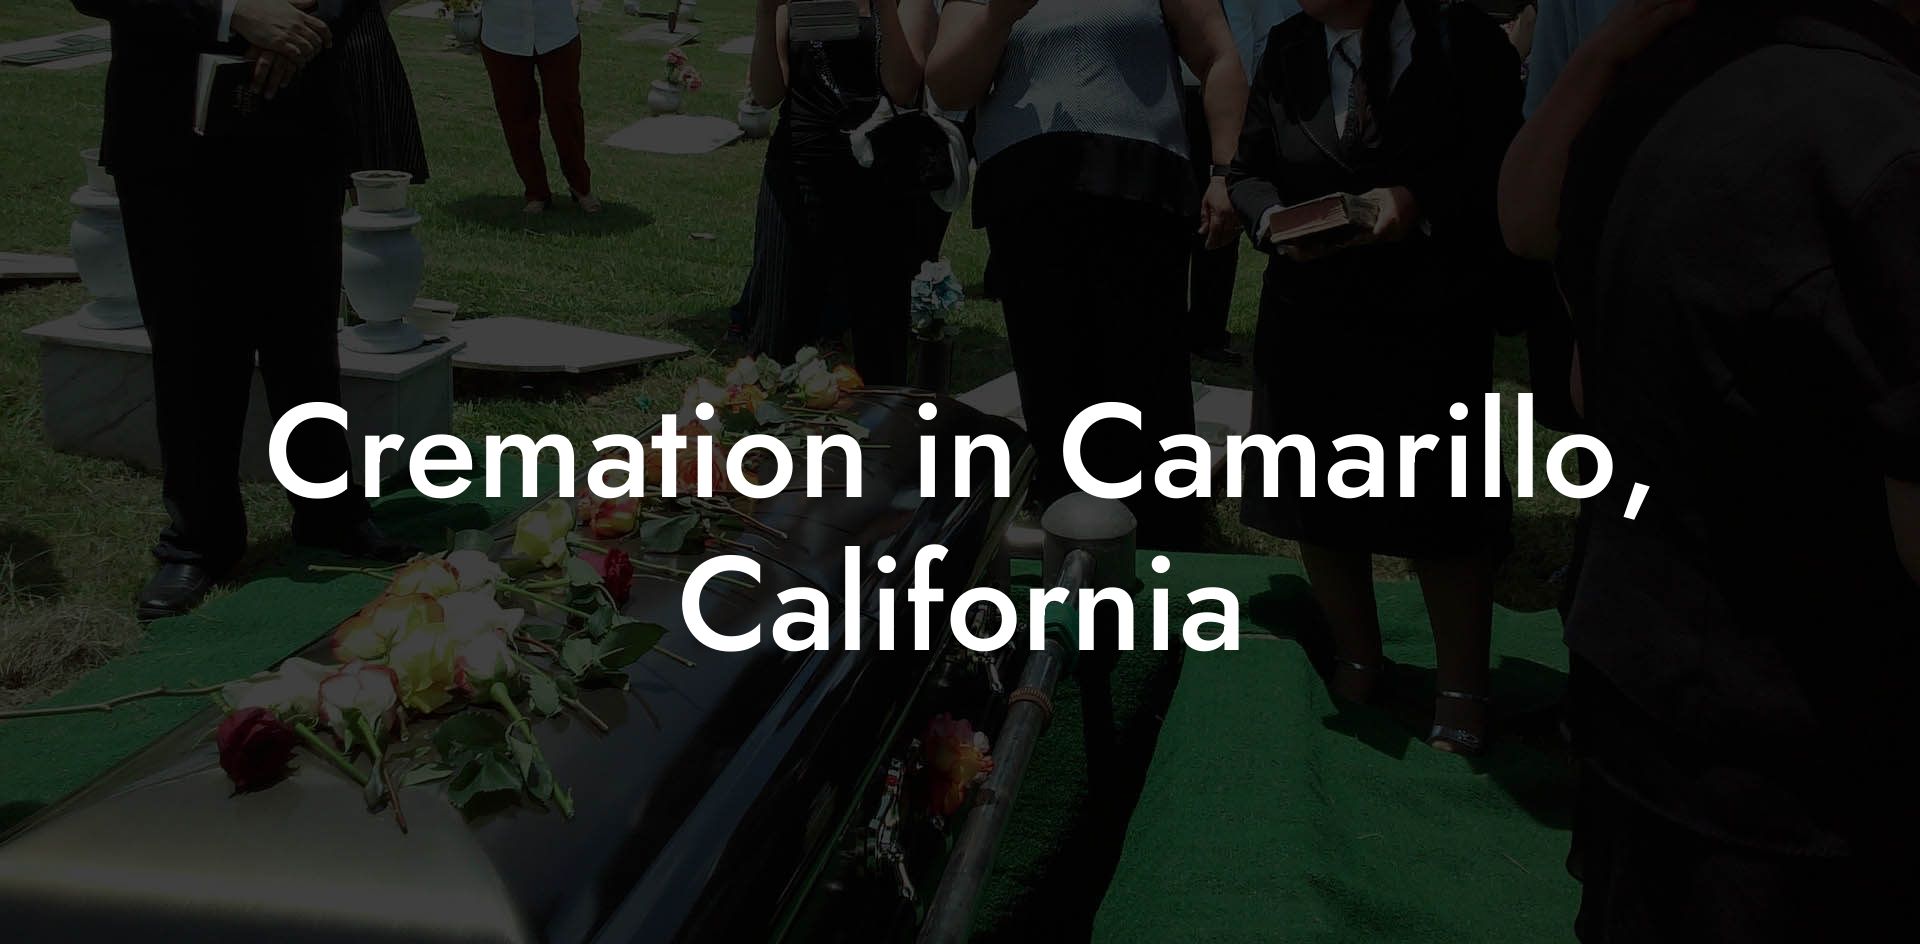 Cremation in Camarillo, California